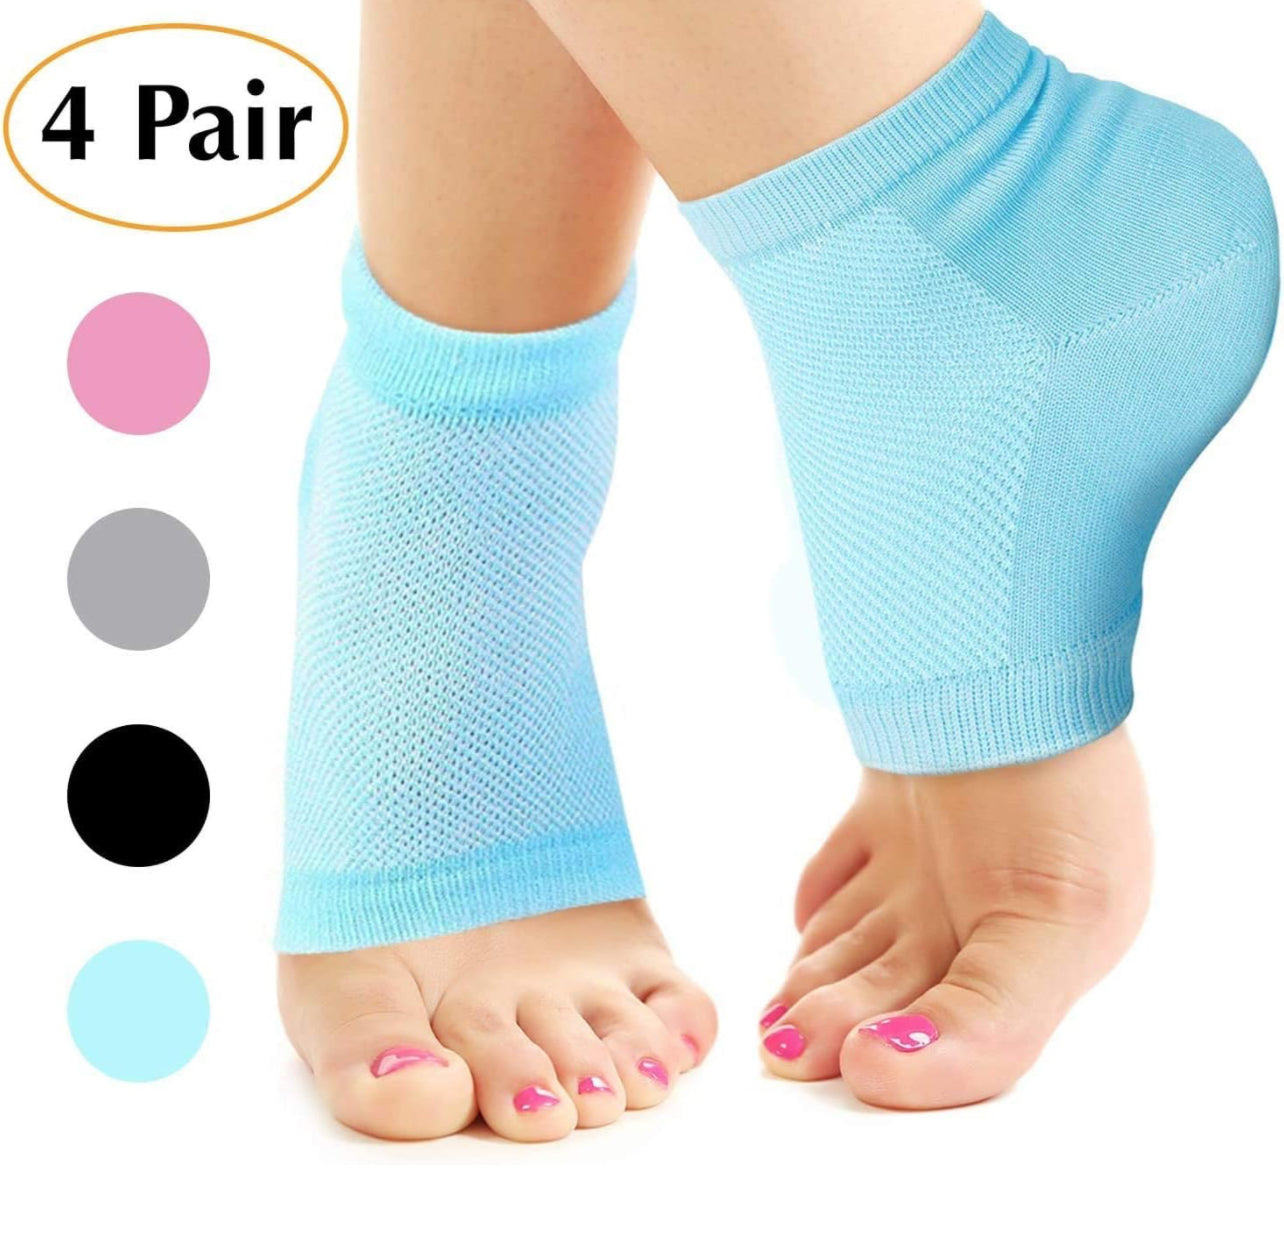 Moisturizing socks for Heels